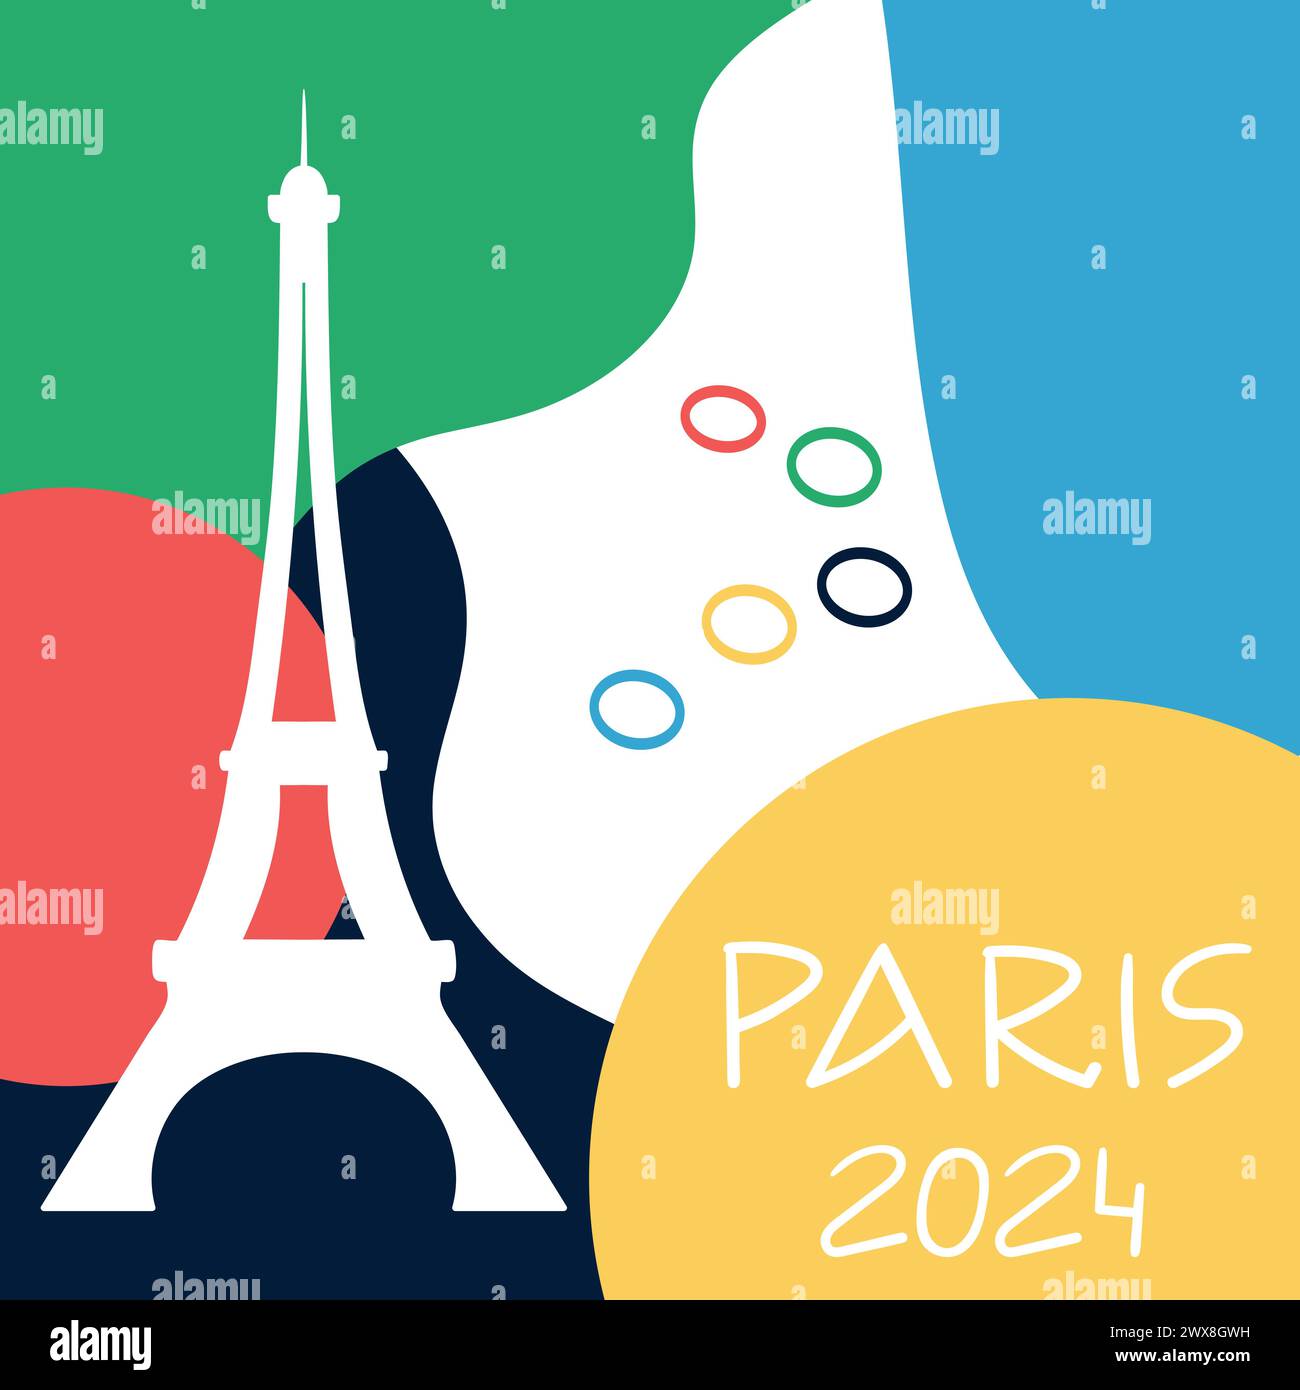 Design dei giochi sportivi olimpici di Parigi 2024. Sfondo colorato con forme astratte, anelli e silhouette della Torre Eiffel. Illustrazione vettoriale Illustrazione Vettoriale